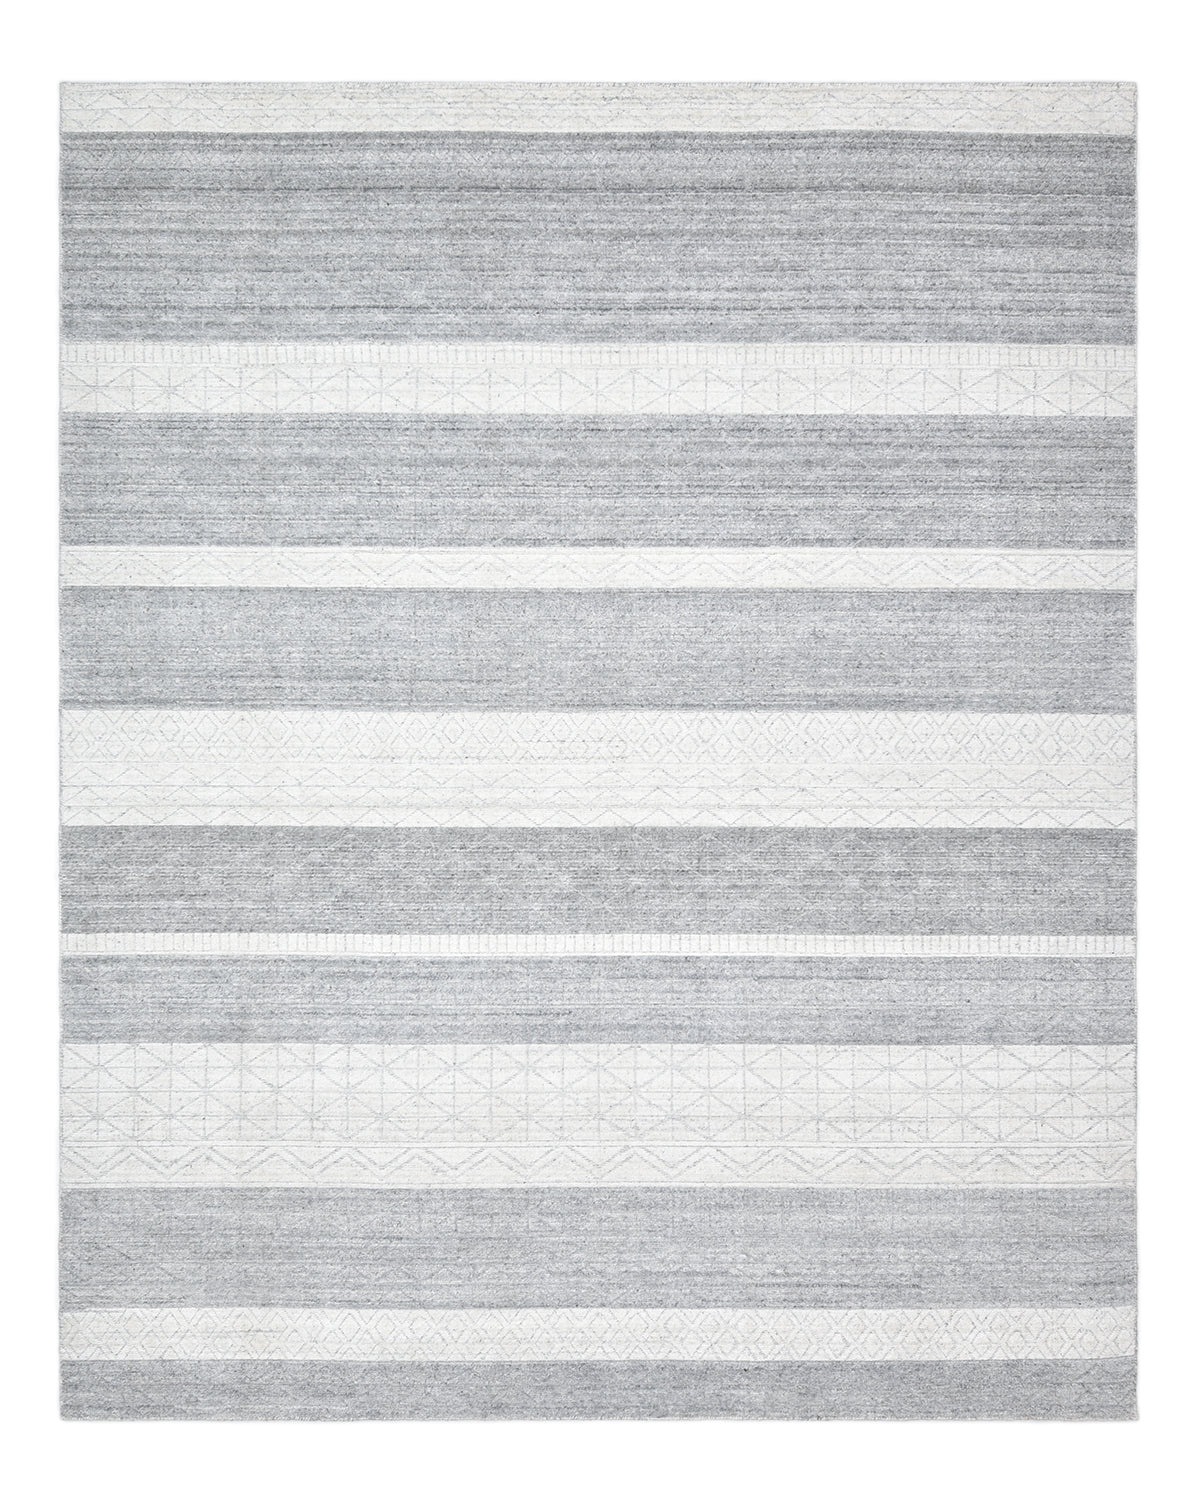 Pari Handmade Contemporary Striped Gray Area Rug